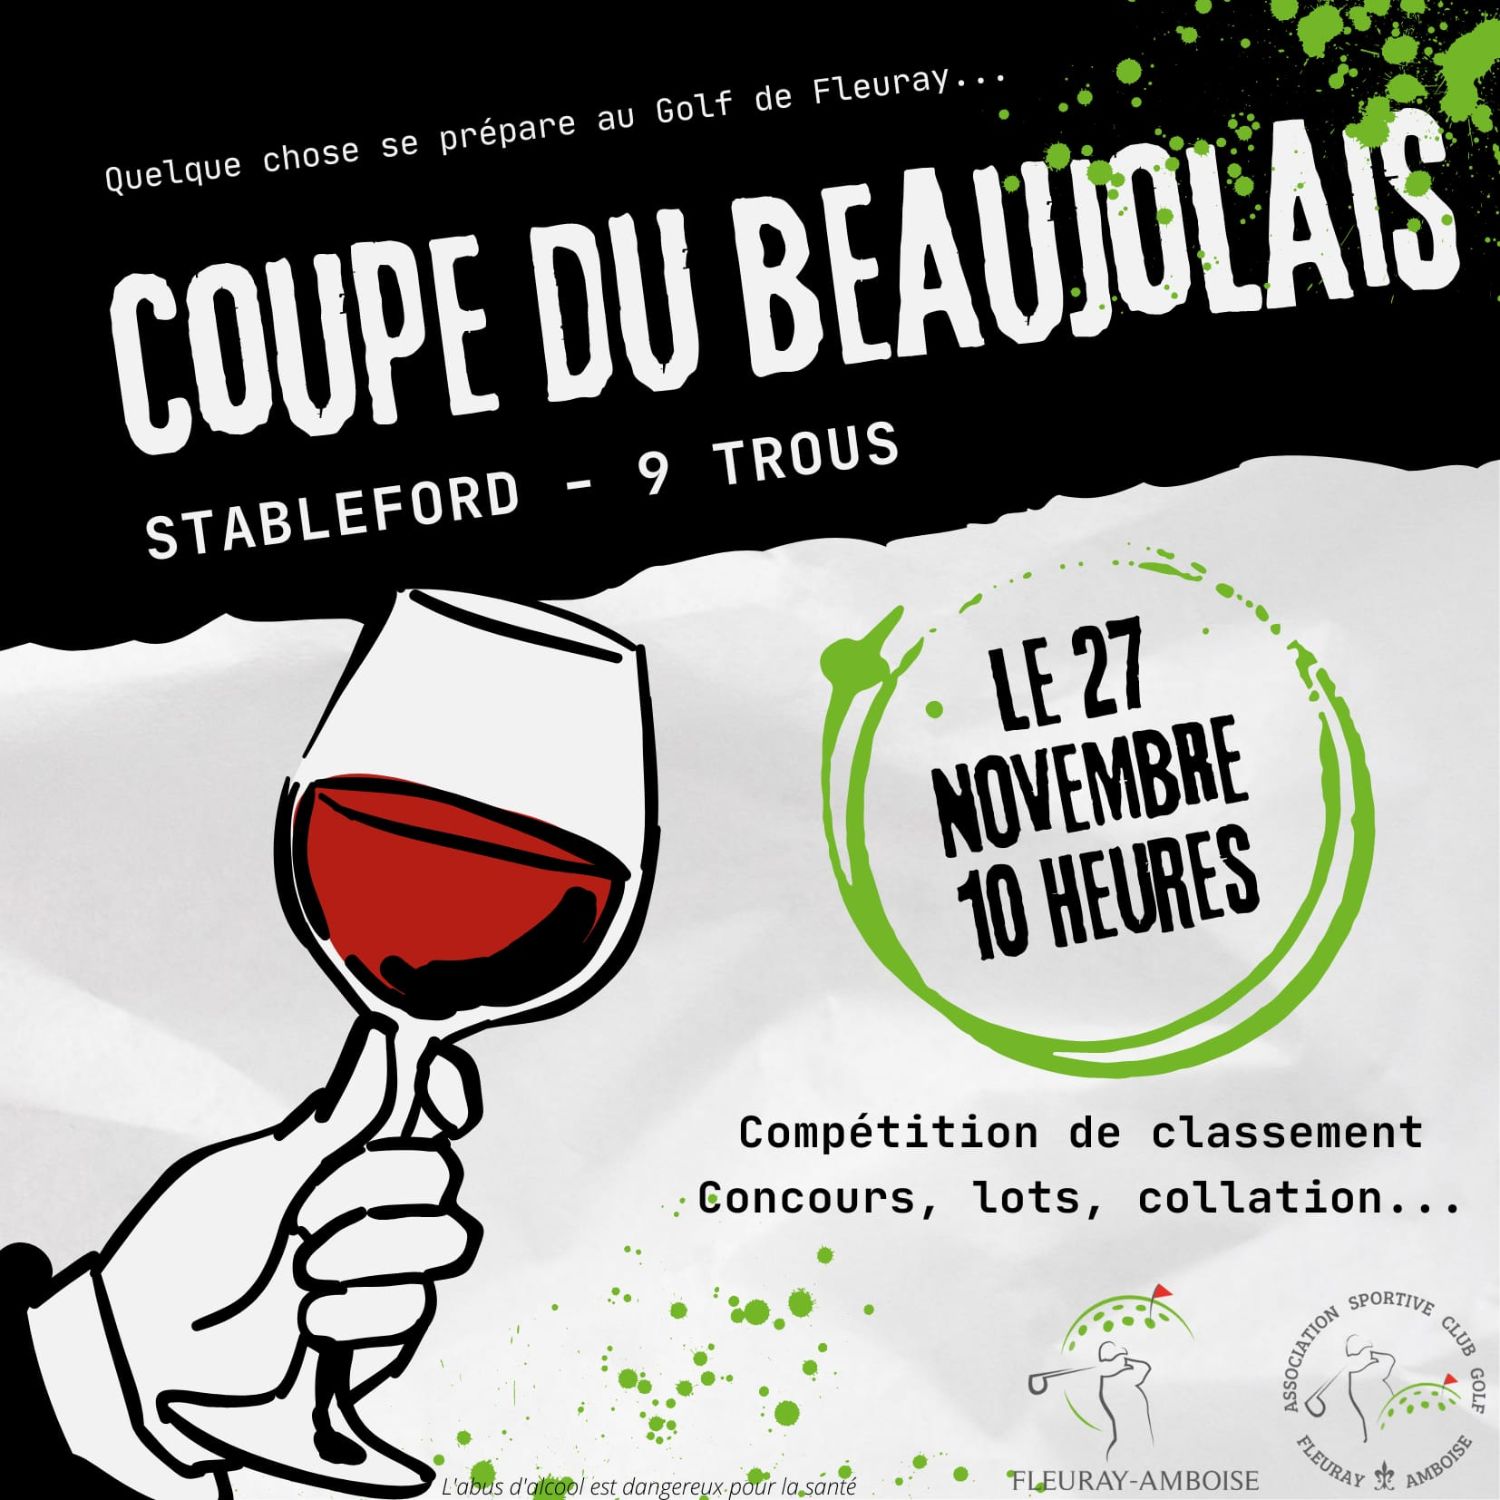 Coupe du Beaujolais - Stableford 9 trous